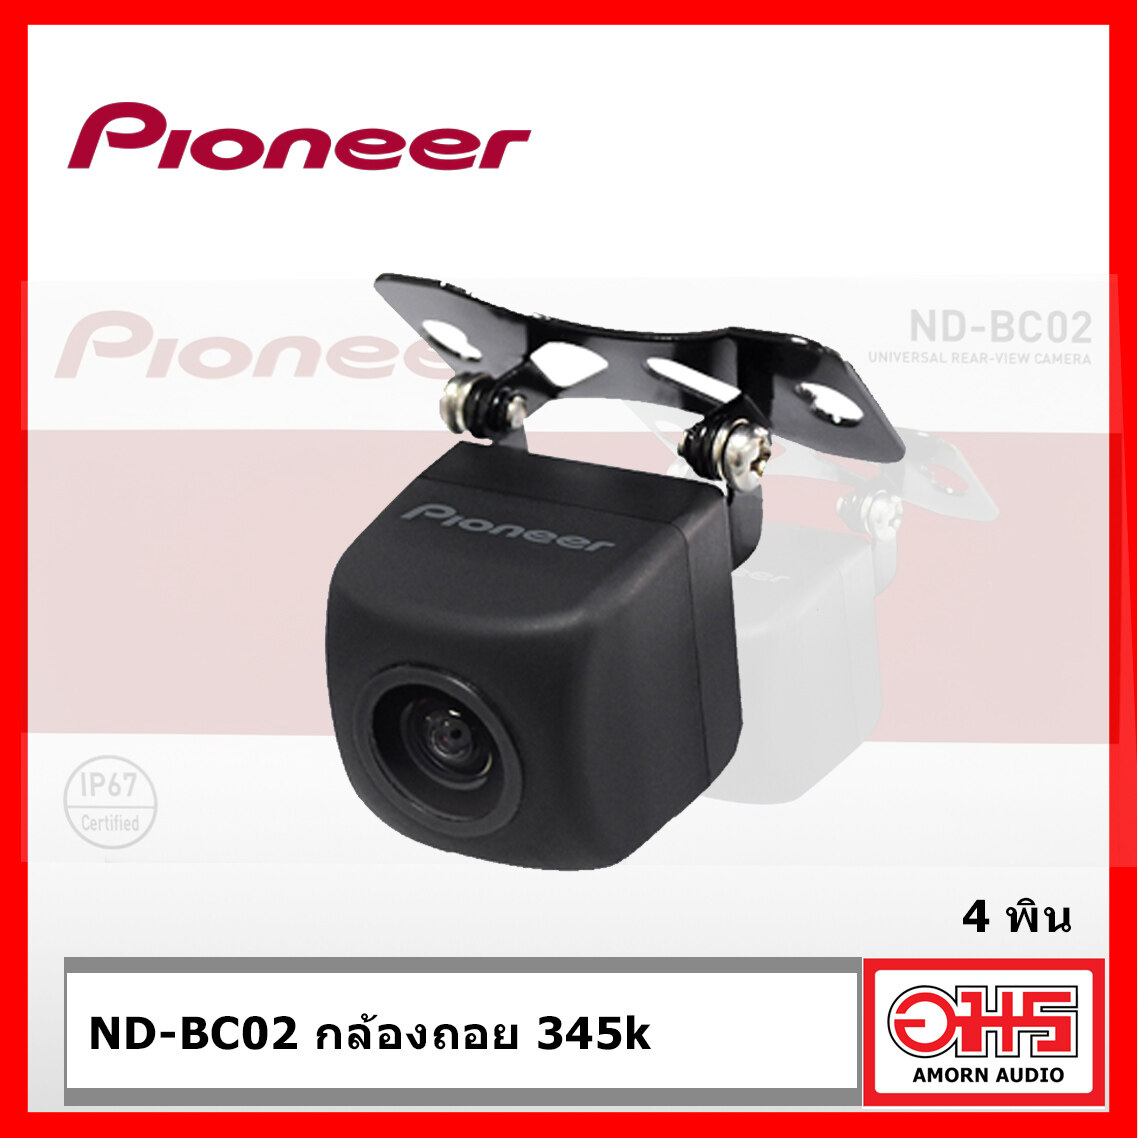 กล้องมองหลัง Pioneer รุ่น ND-BC02 UNIVERSAL REAR-VIEW CAMERA AMORNAUDIO อมรออดิโอ